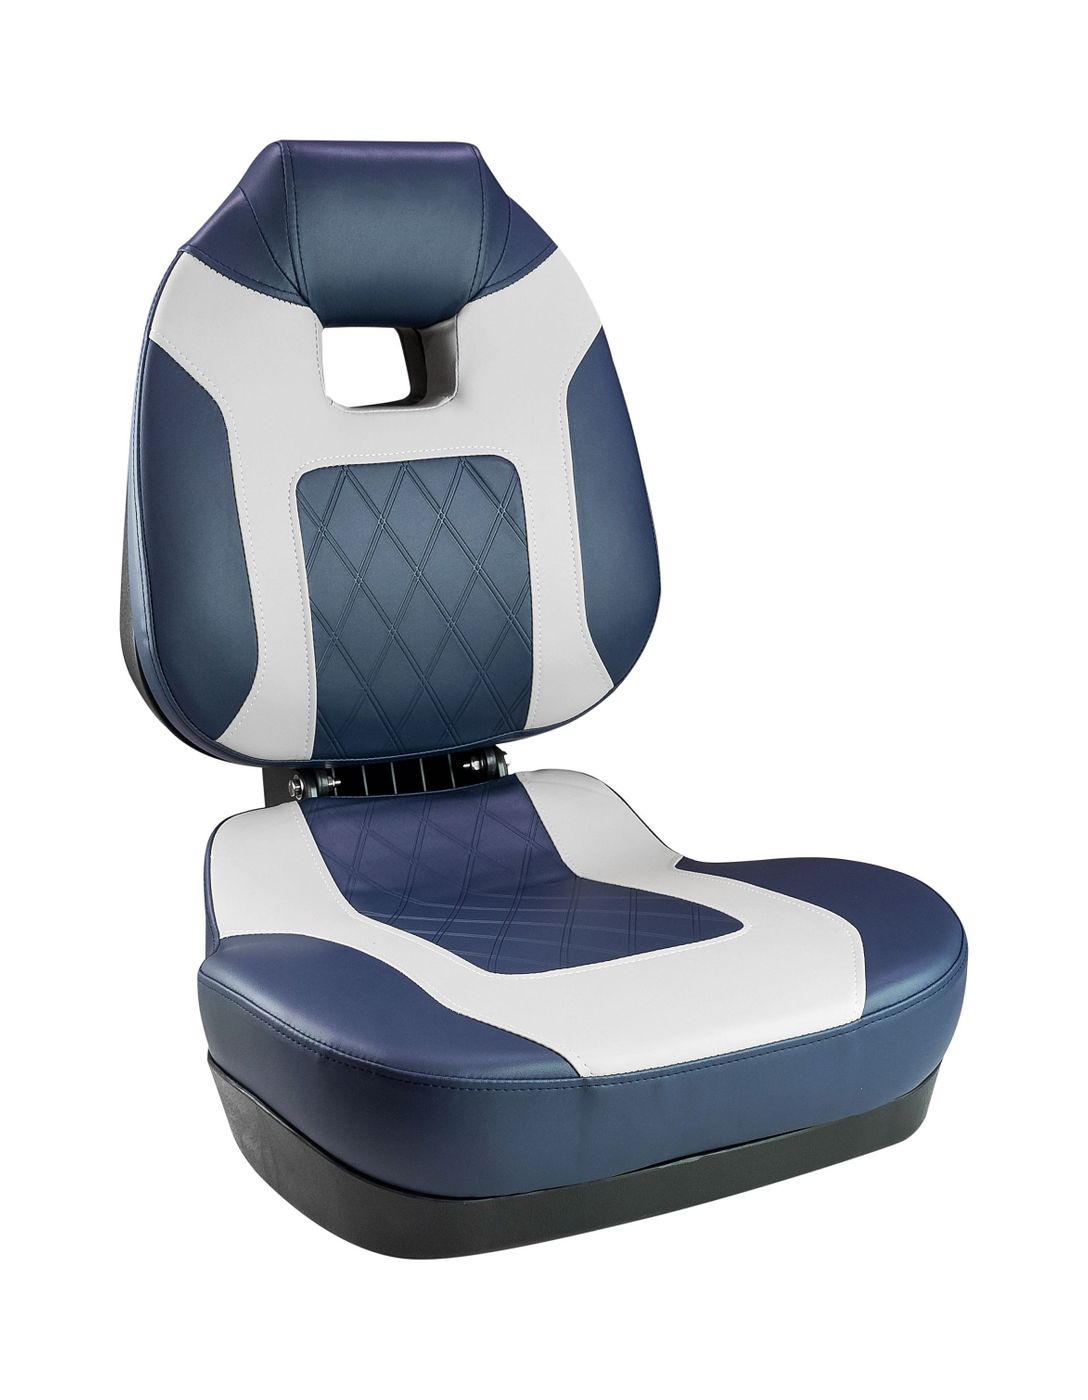 Кресло складное мягкое FISH PRO II с высокой спинкой, цвет синий/серый 1041419 автохолодильник starwind cf 123 23л 48вт синий серый